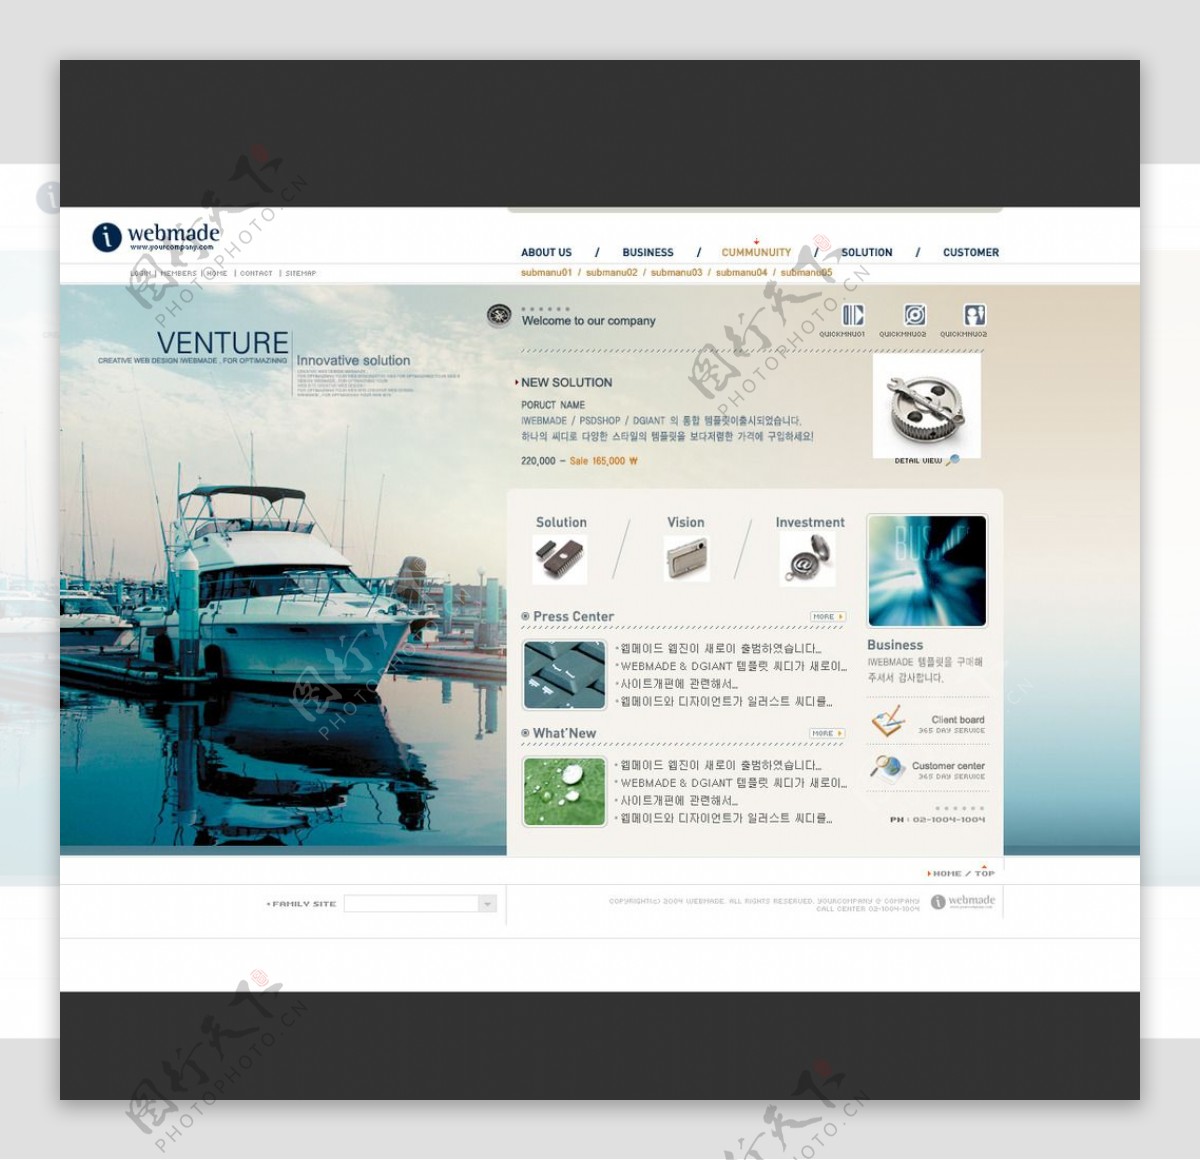 游艇企业网页设计ps分层图片